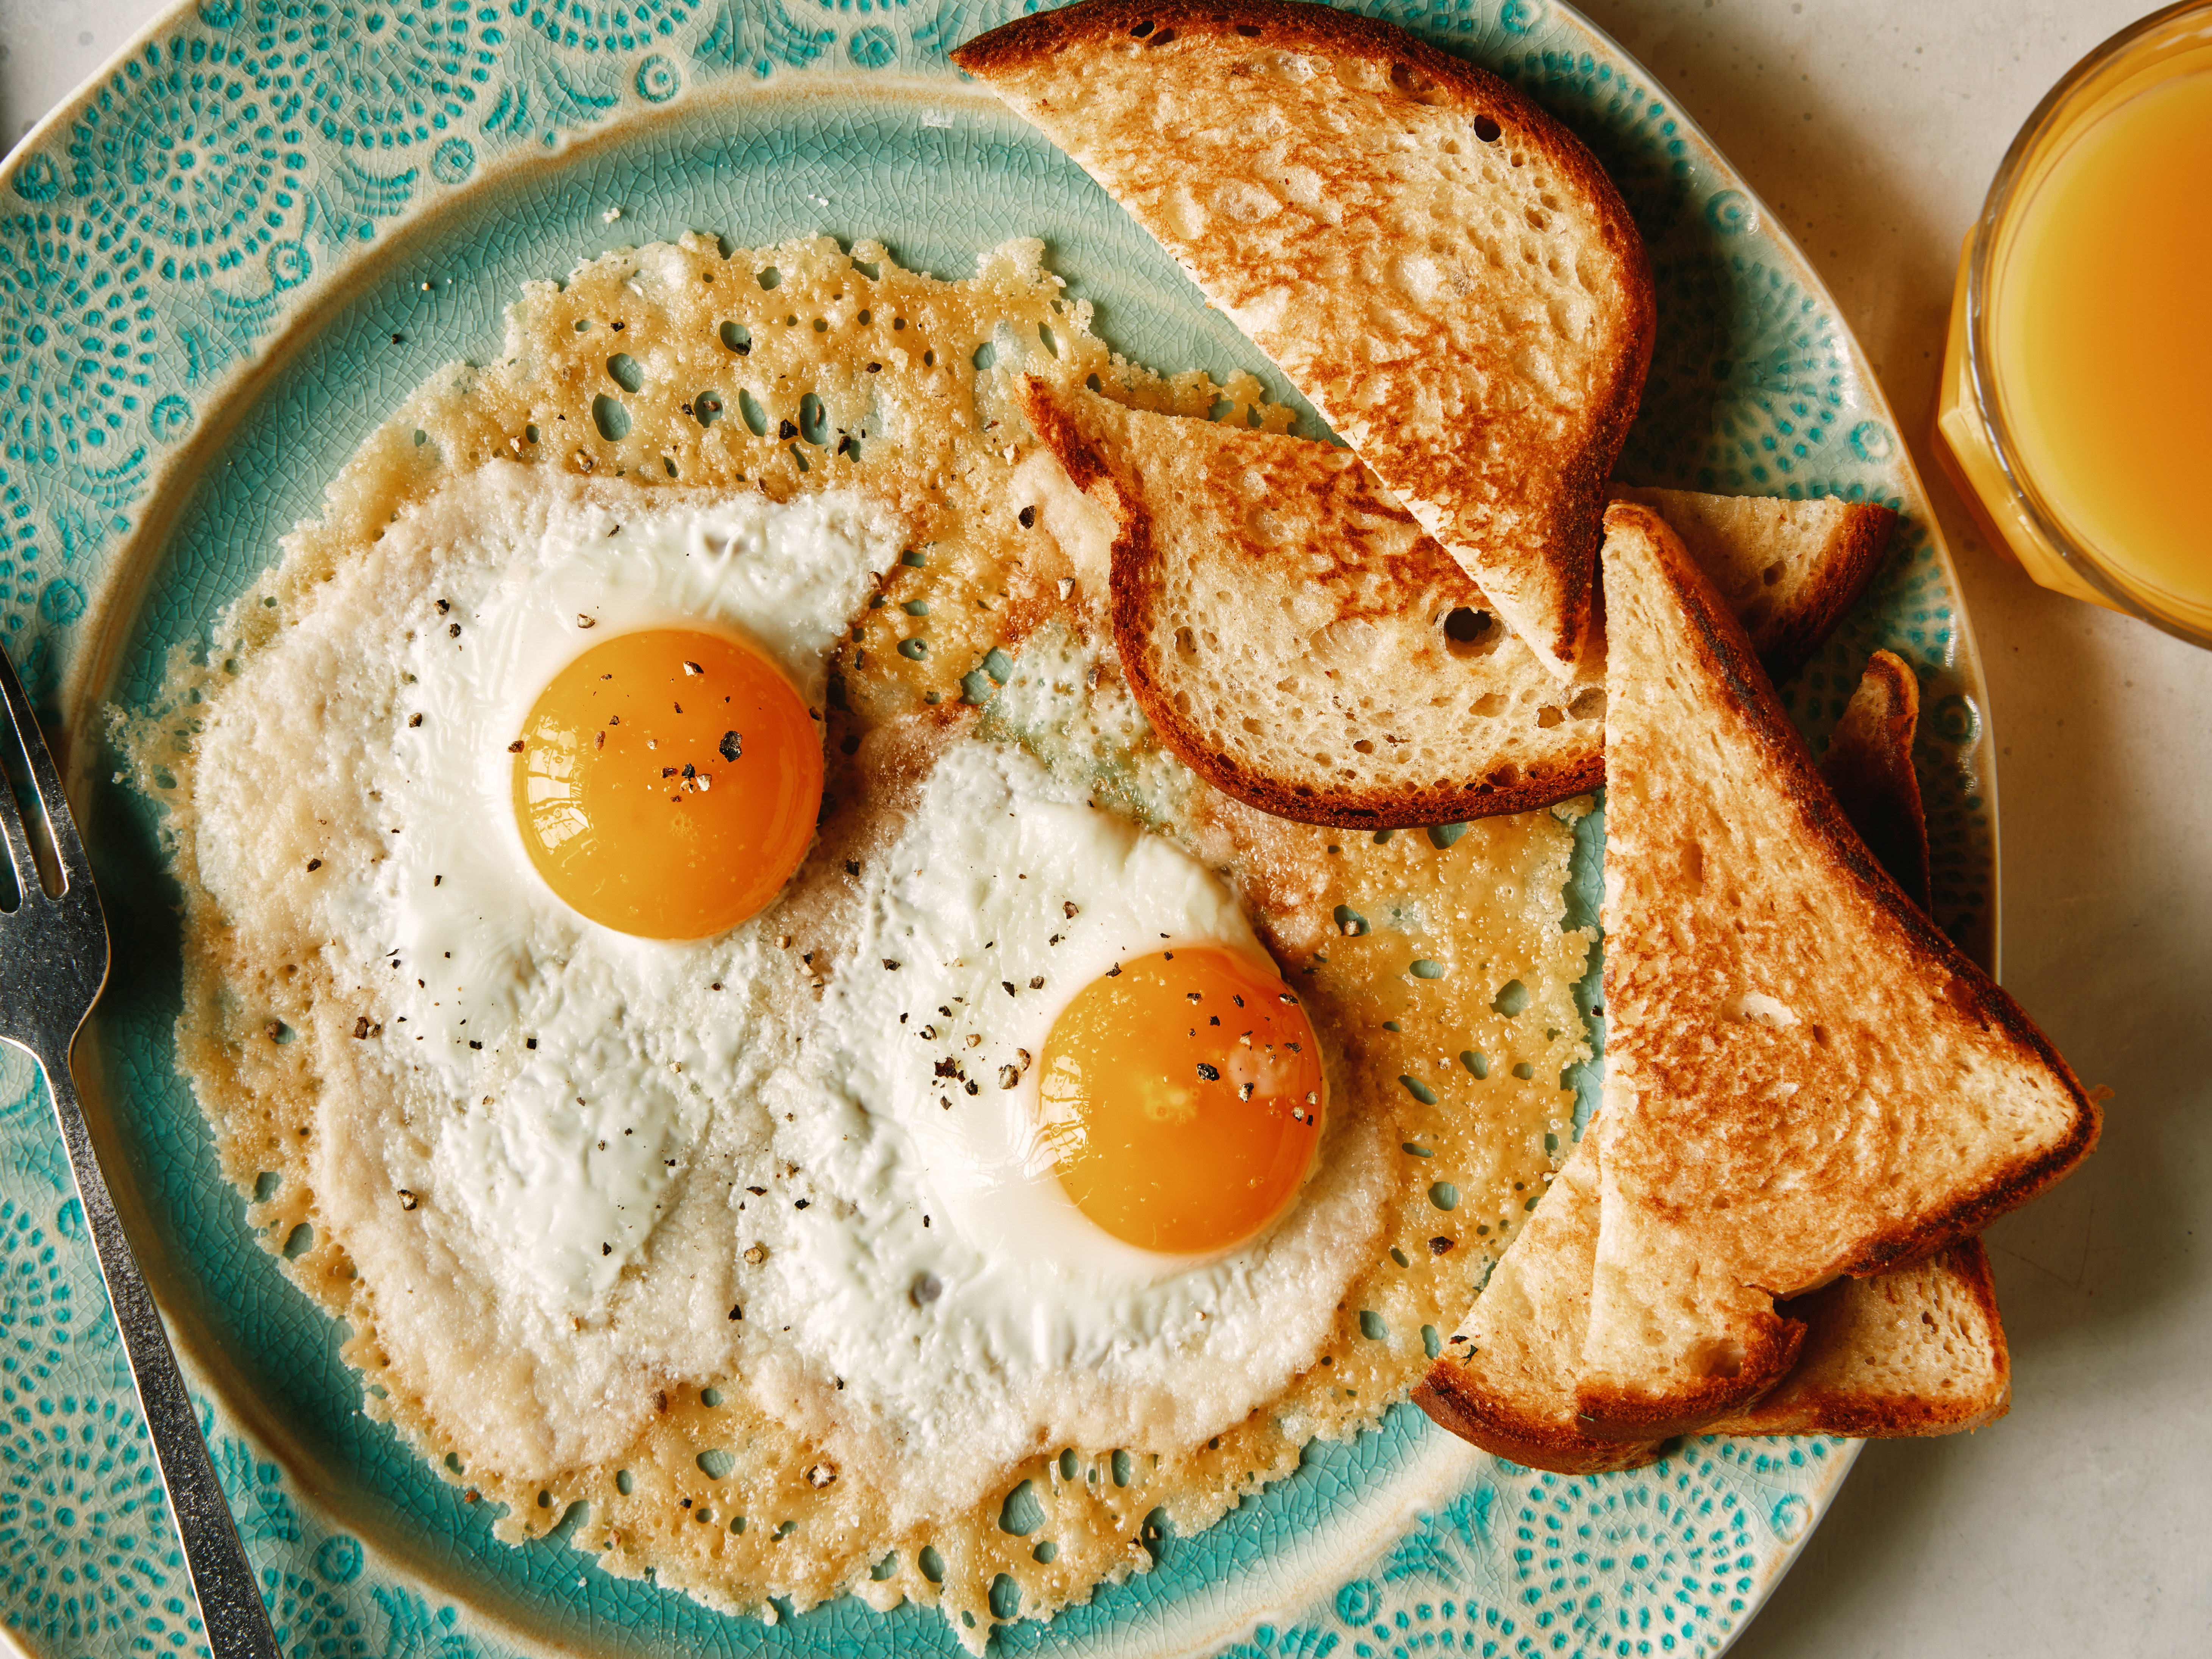 Parmesan Scrambled Eggs Recipe